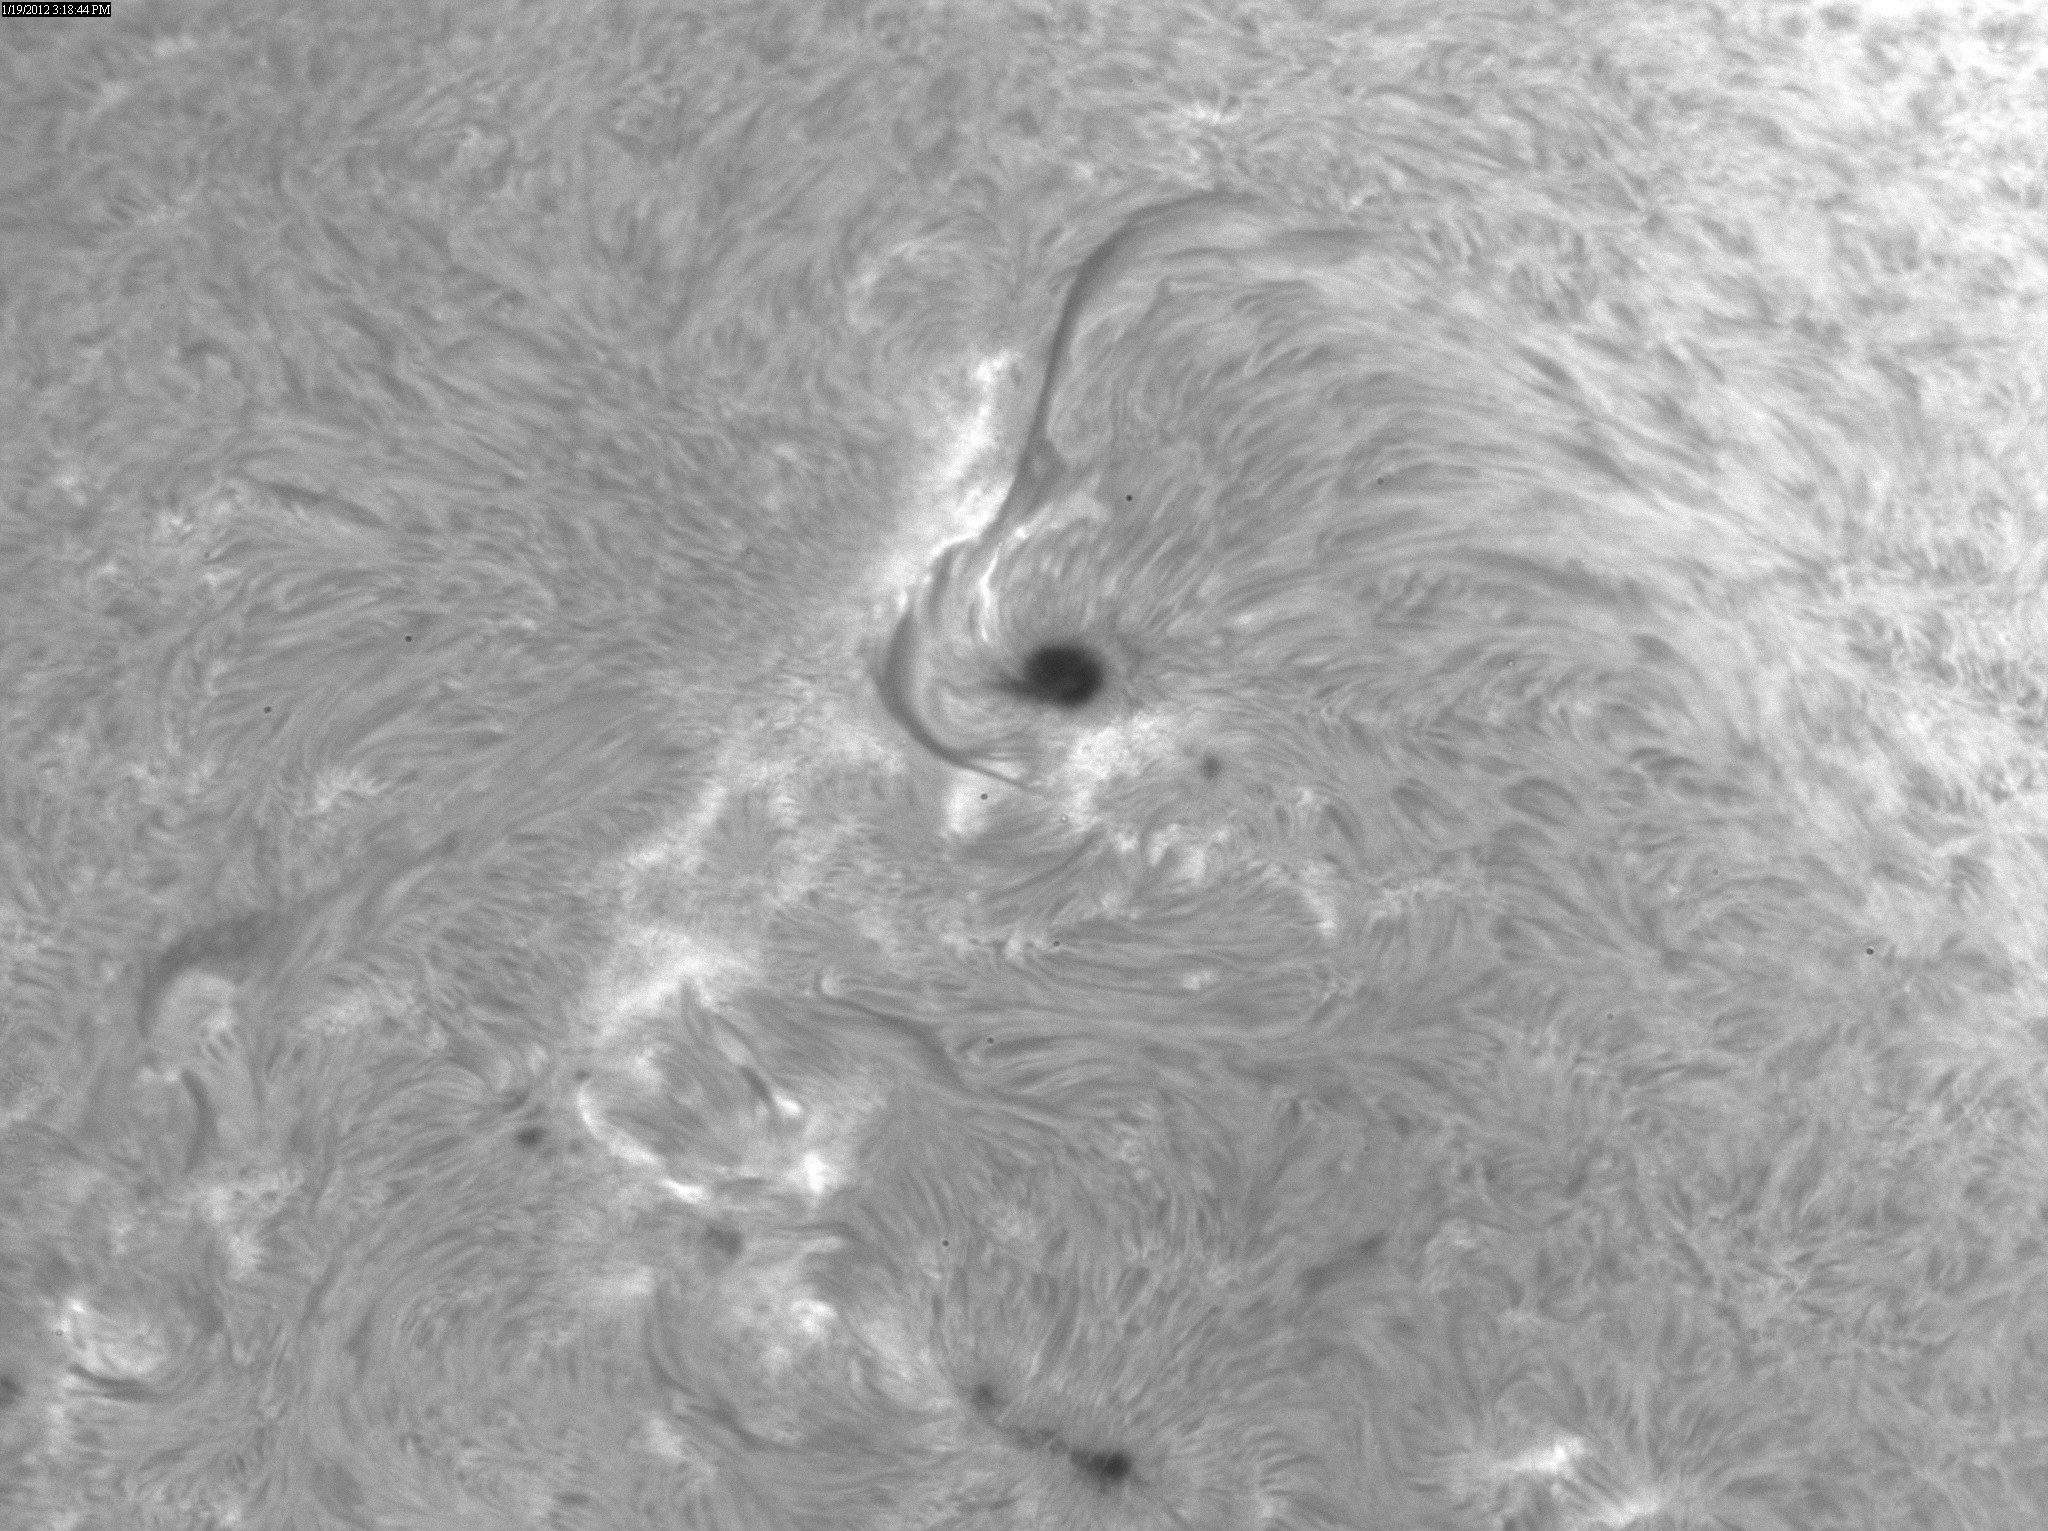 2012 Jan 19 Sun -AR11401 and 11402 region